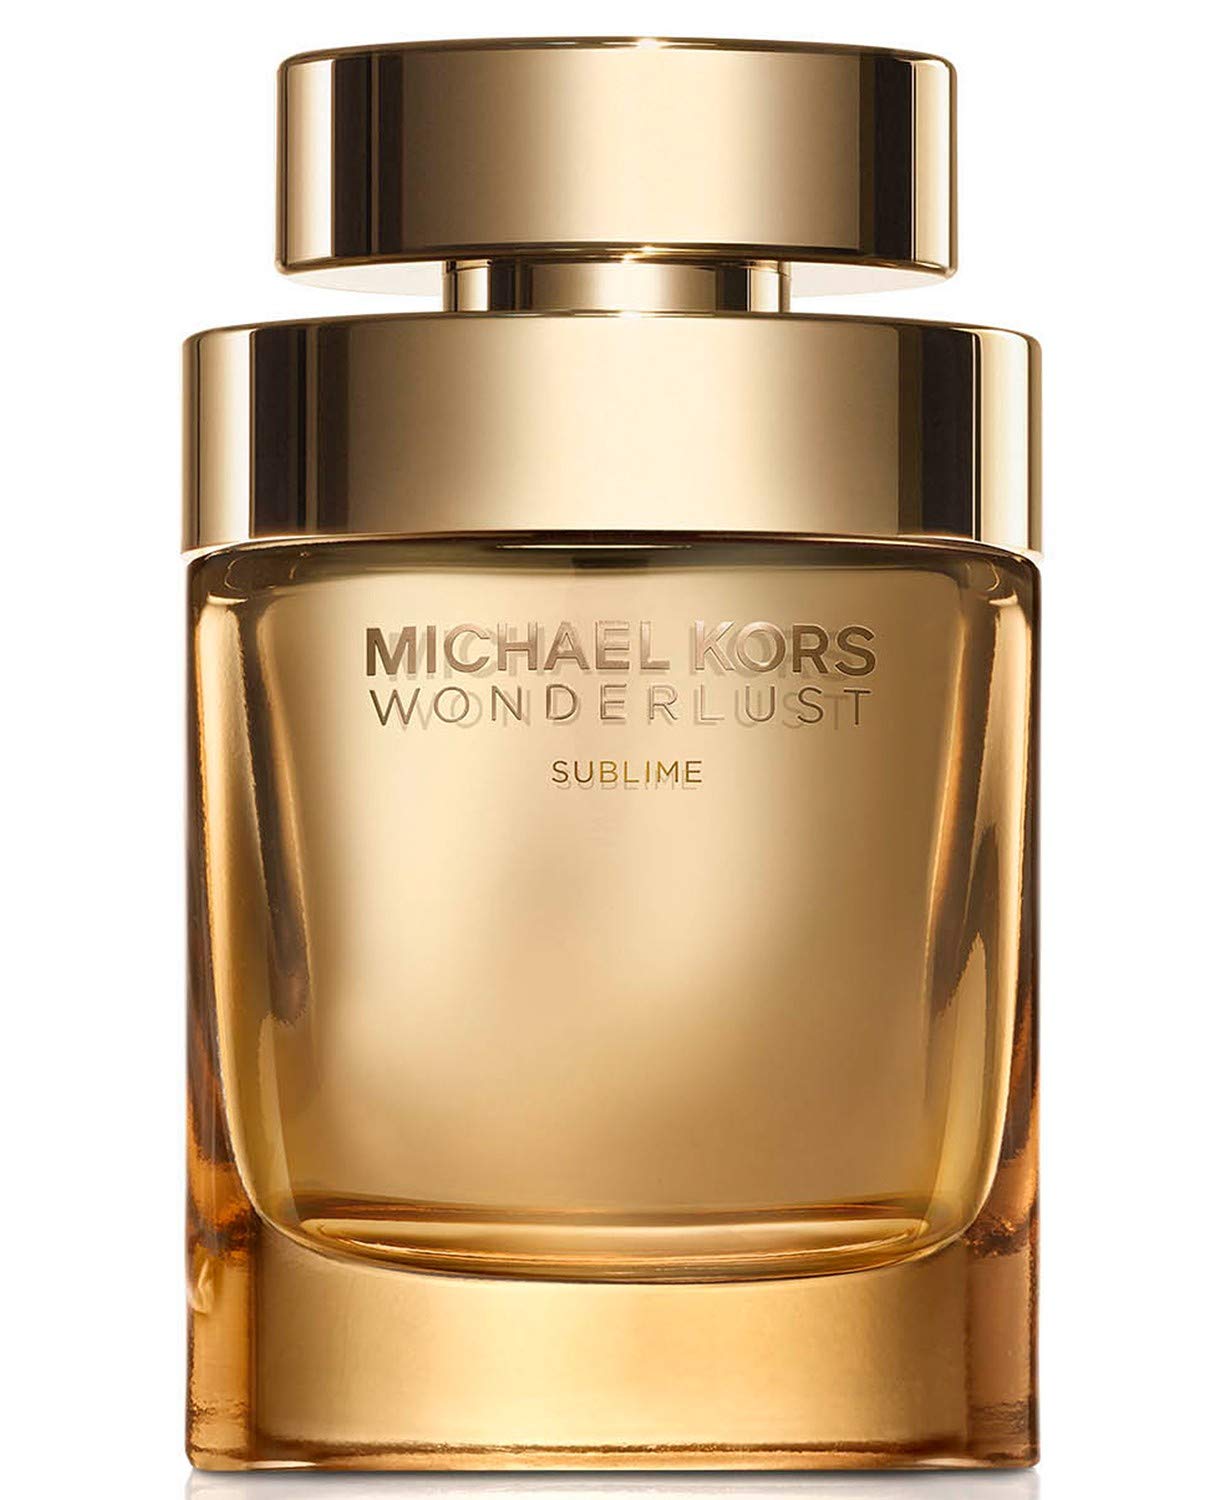 Michael Kors Wonderlust Sublime by Michael Kors Eau De Parfum Spray 3.4 oz